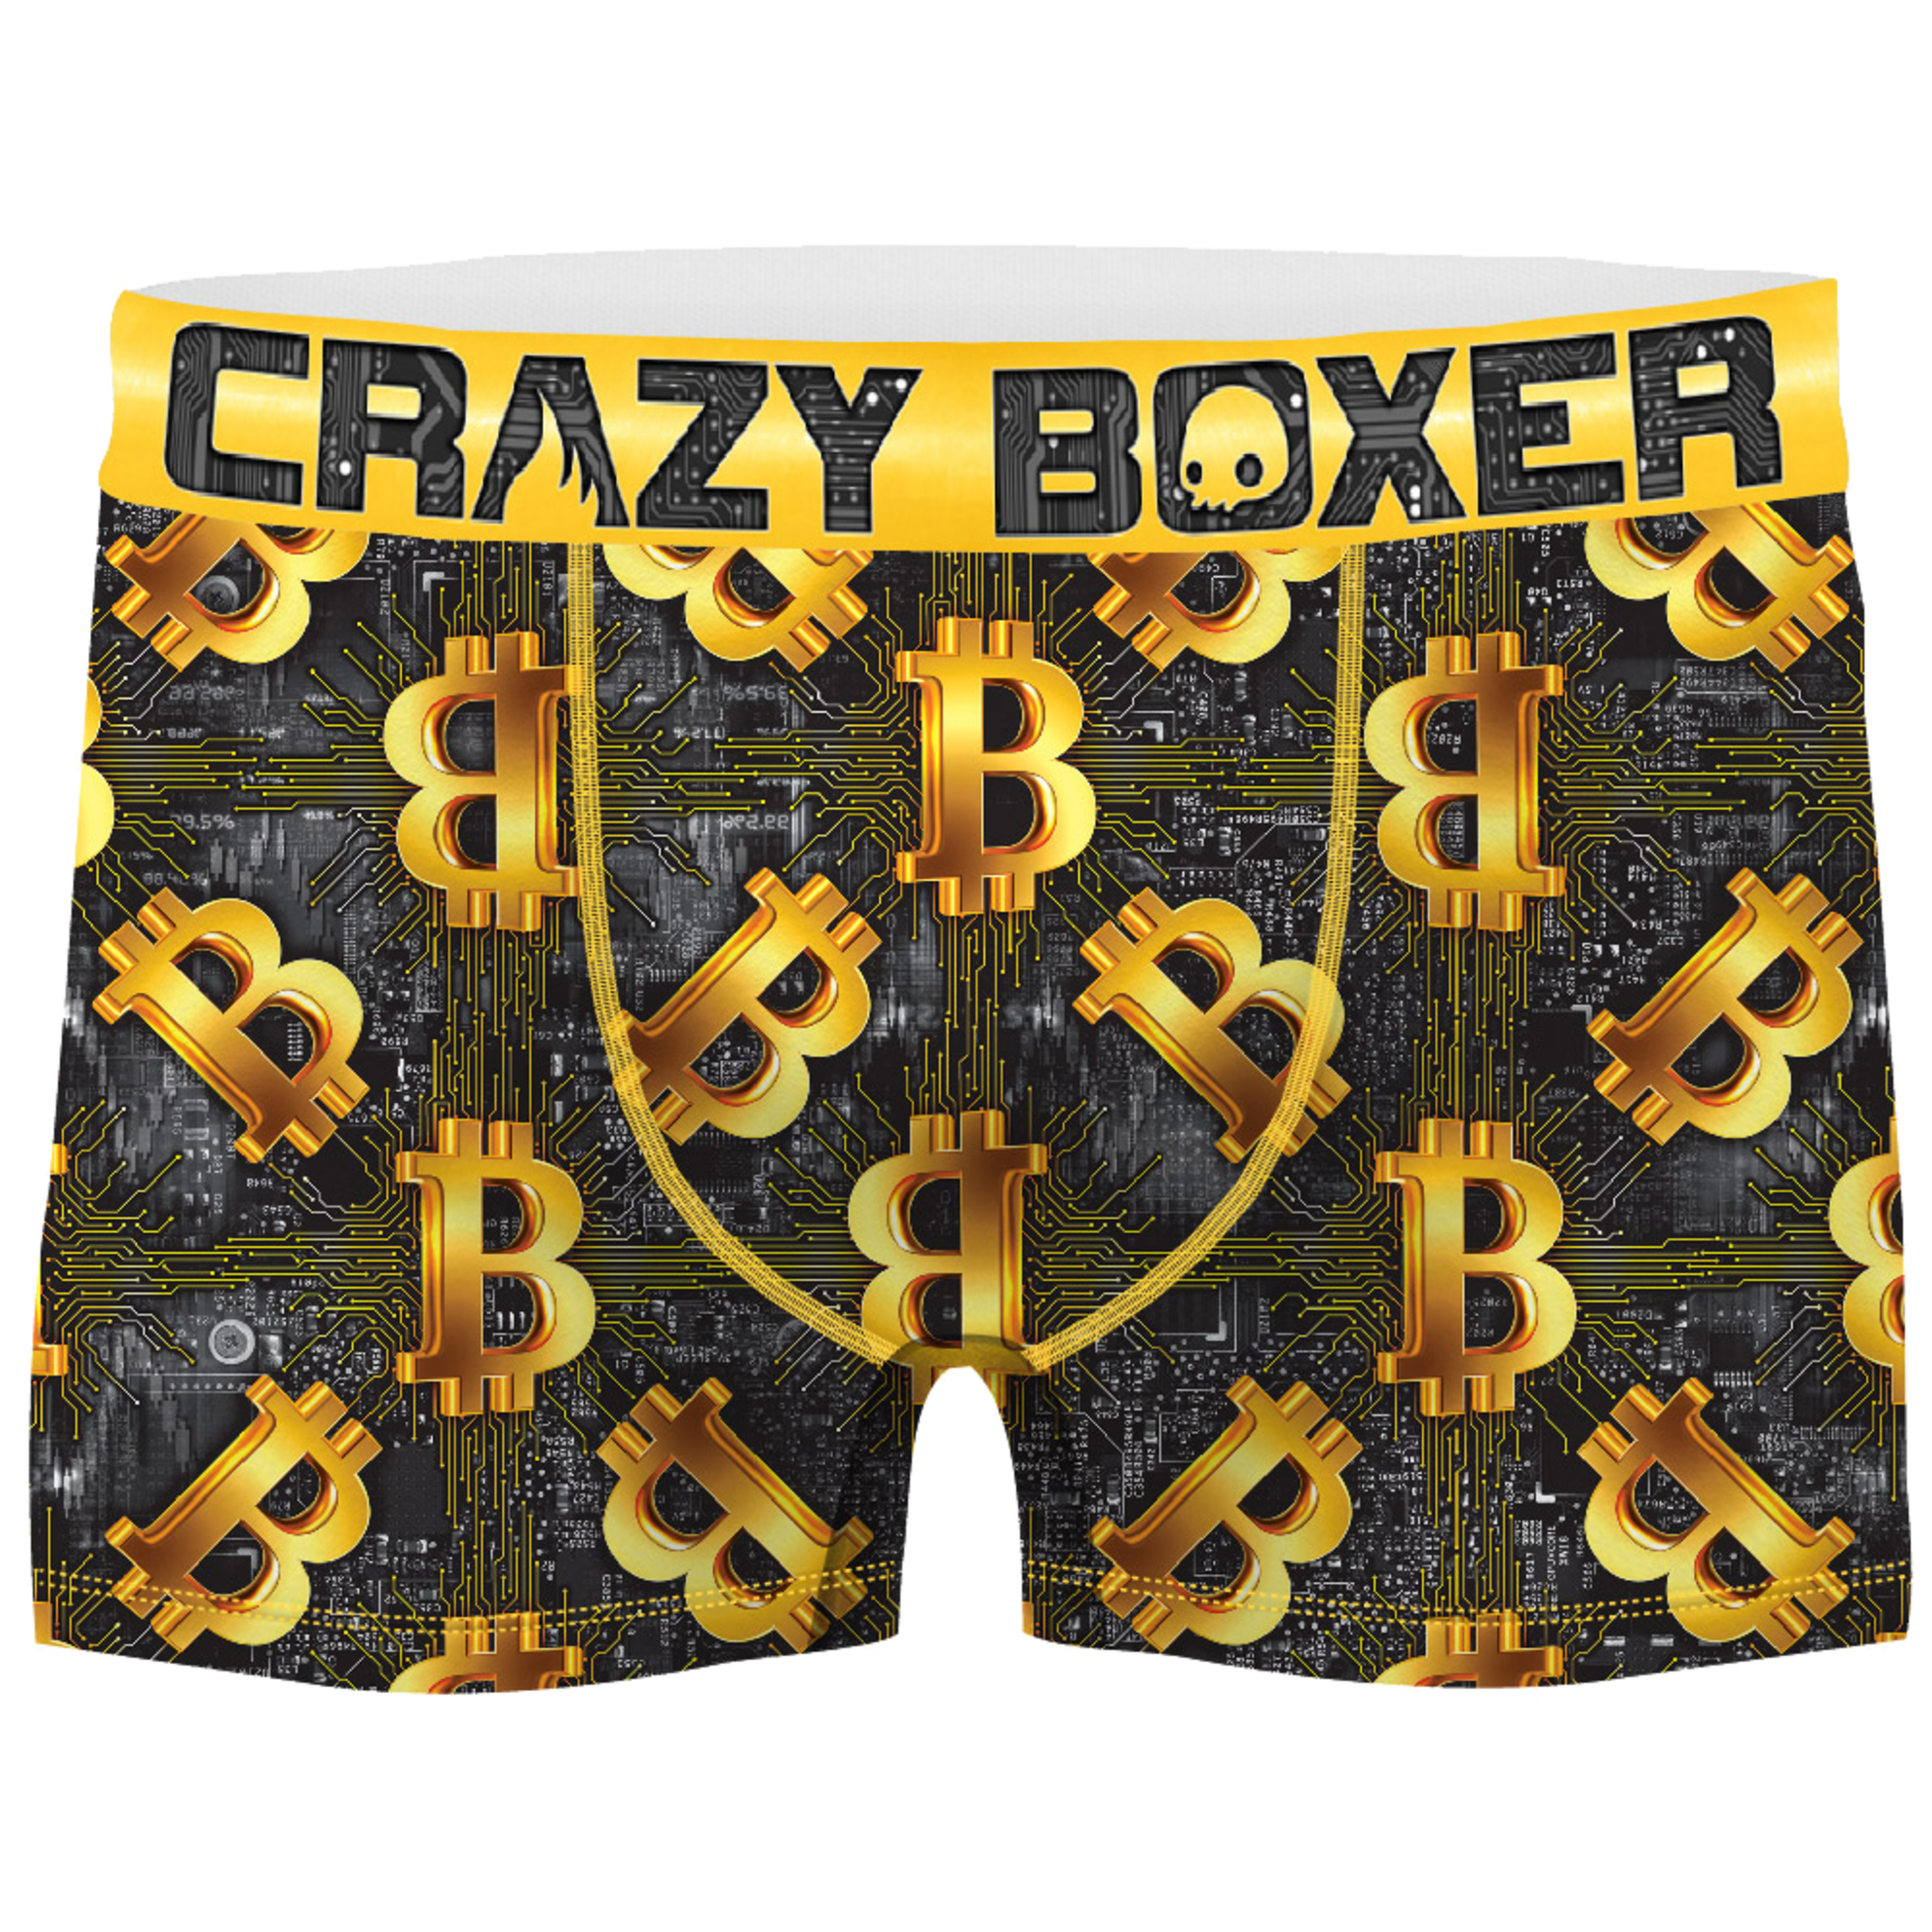 Calzoncillo Bitcoin Crazy Boxer